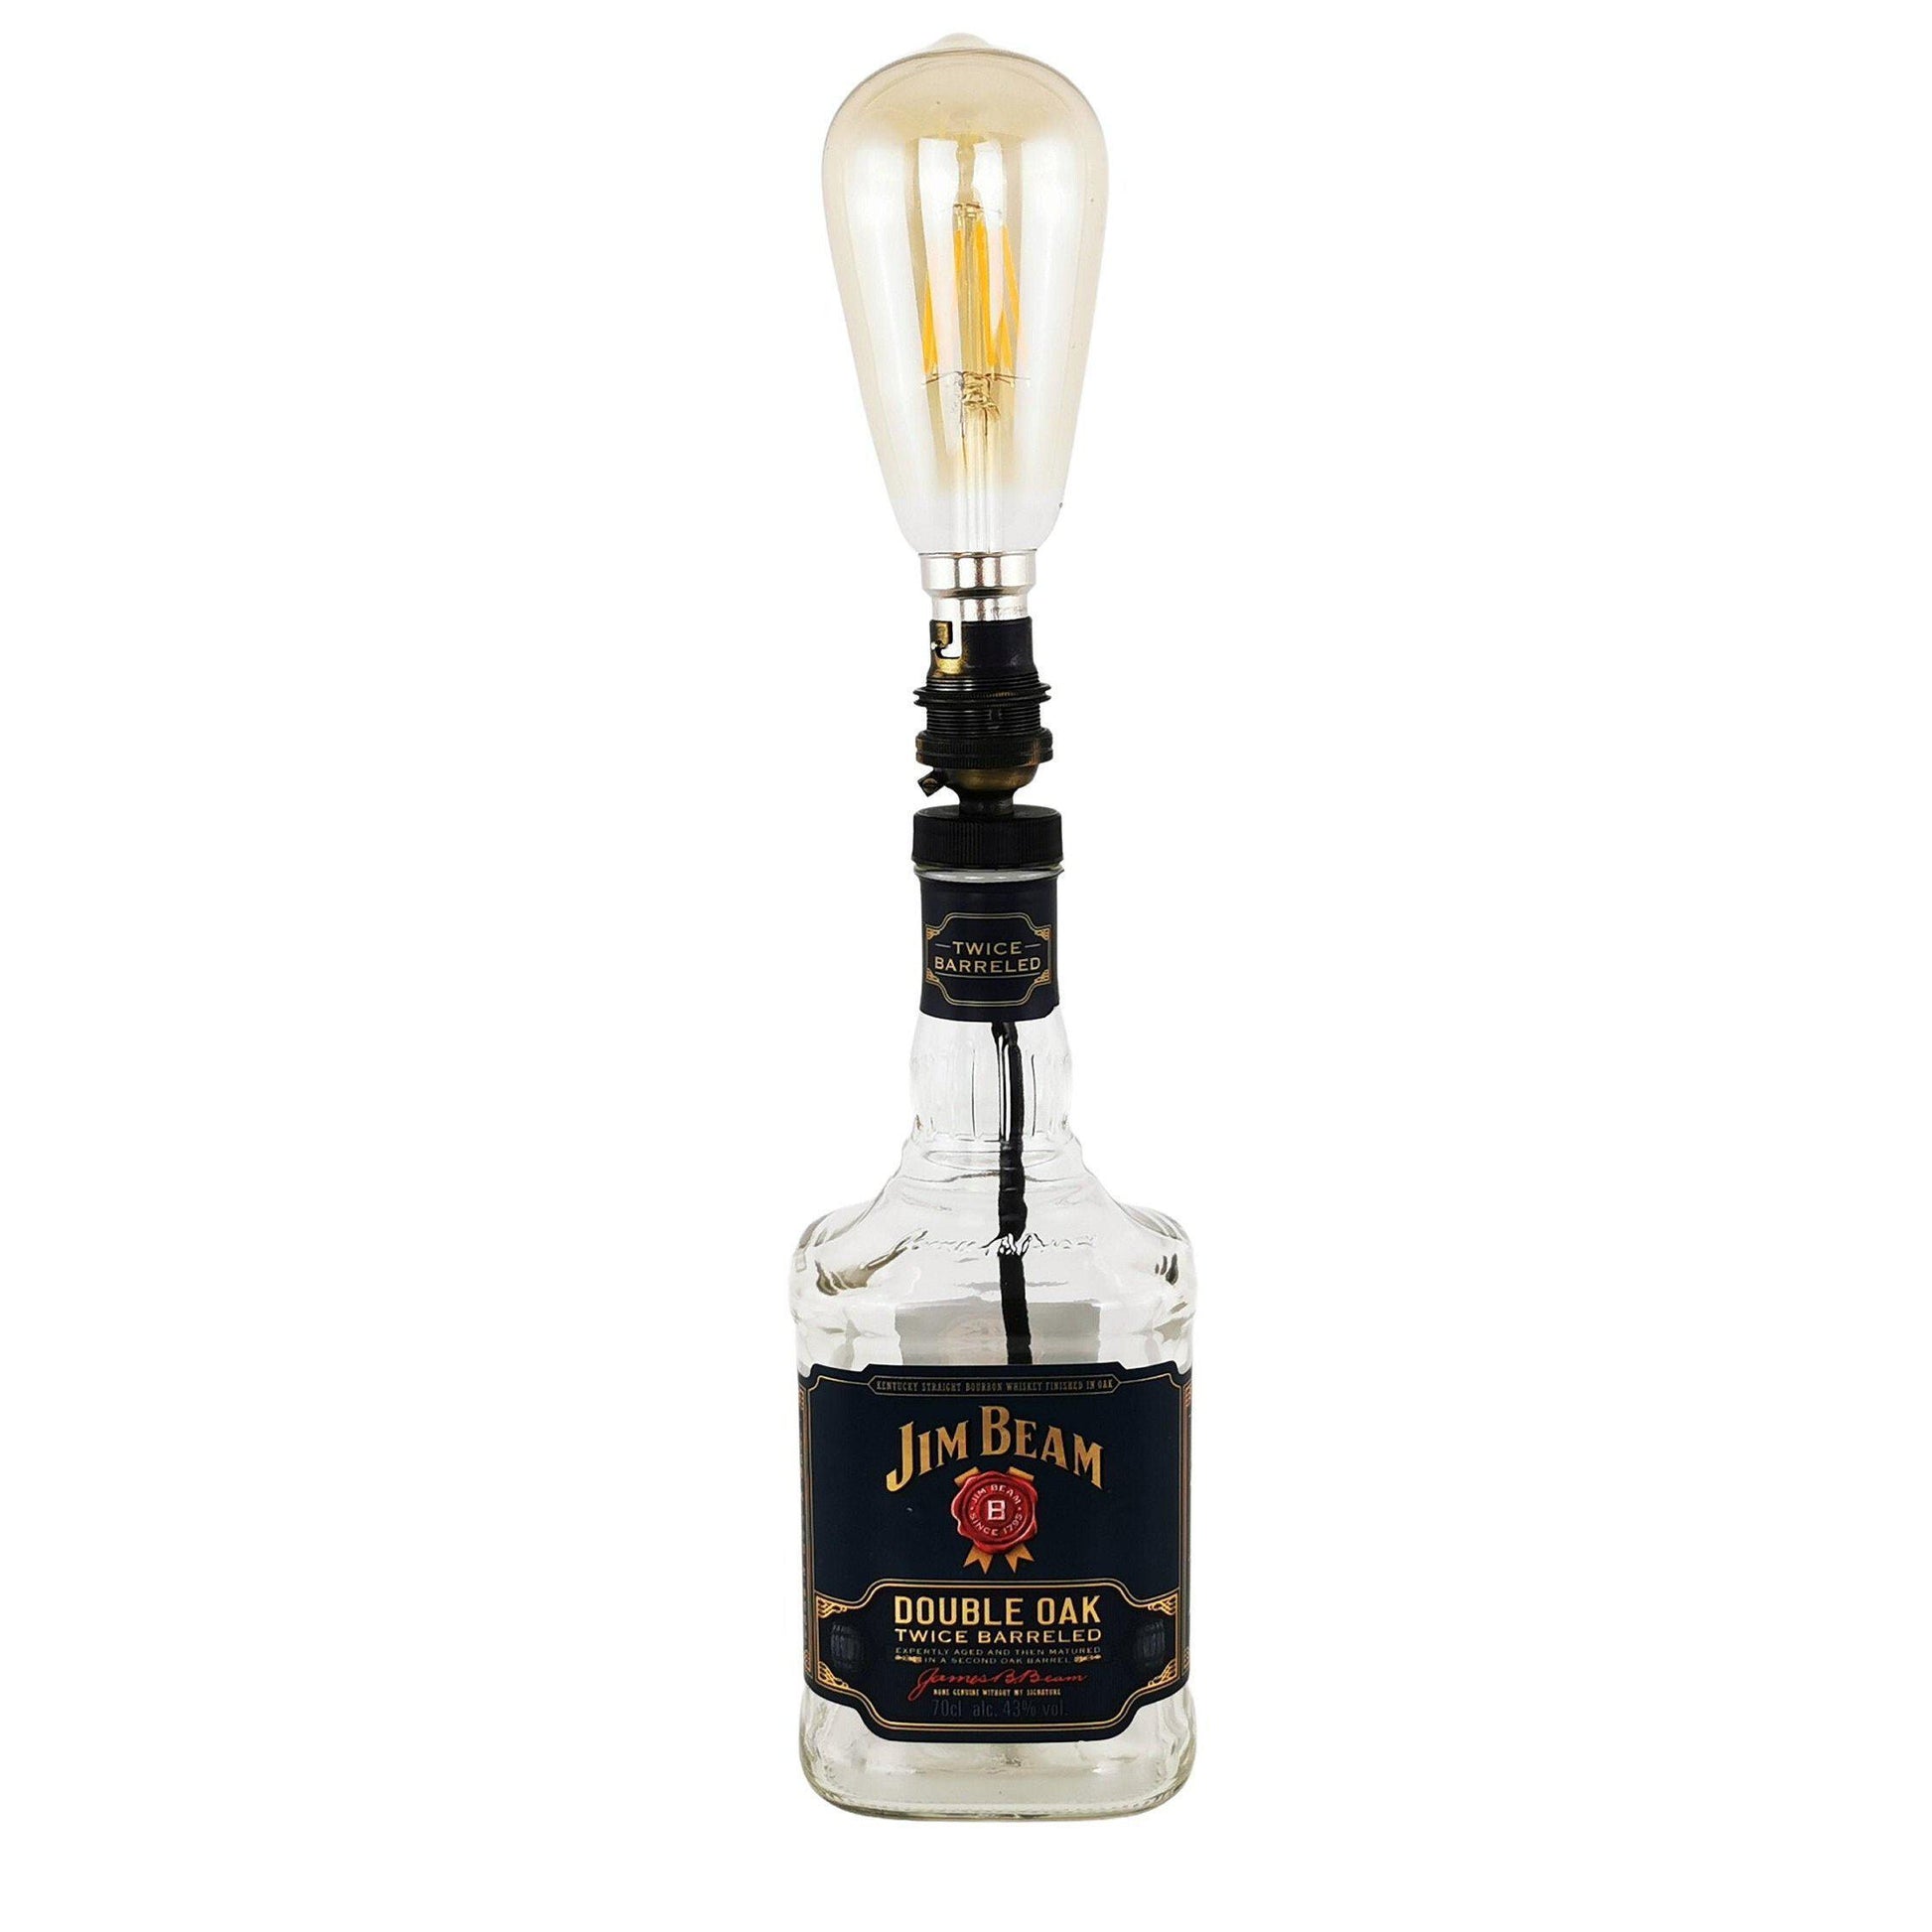 Jim Beam Double Oak Whisky Bottle Table Lamp Whisky Bottle Table Lamps